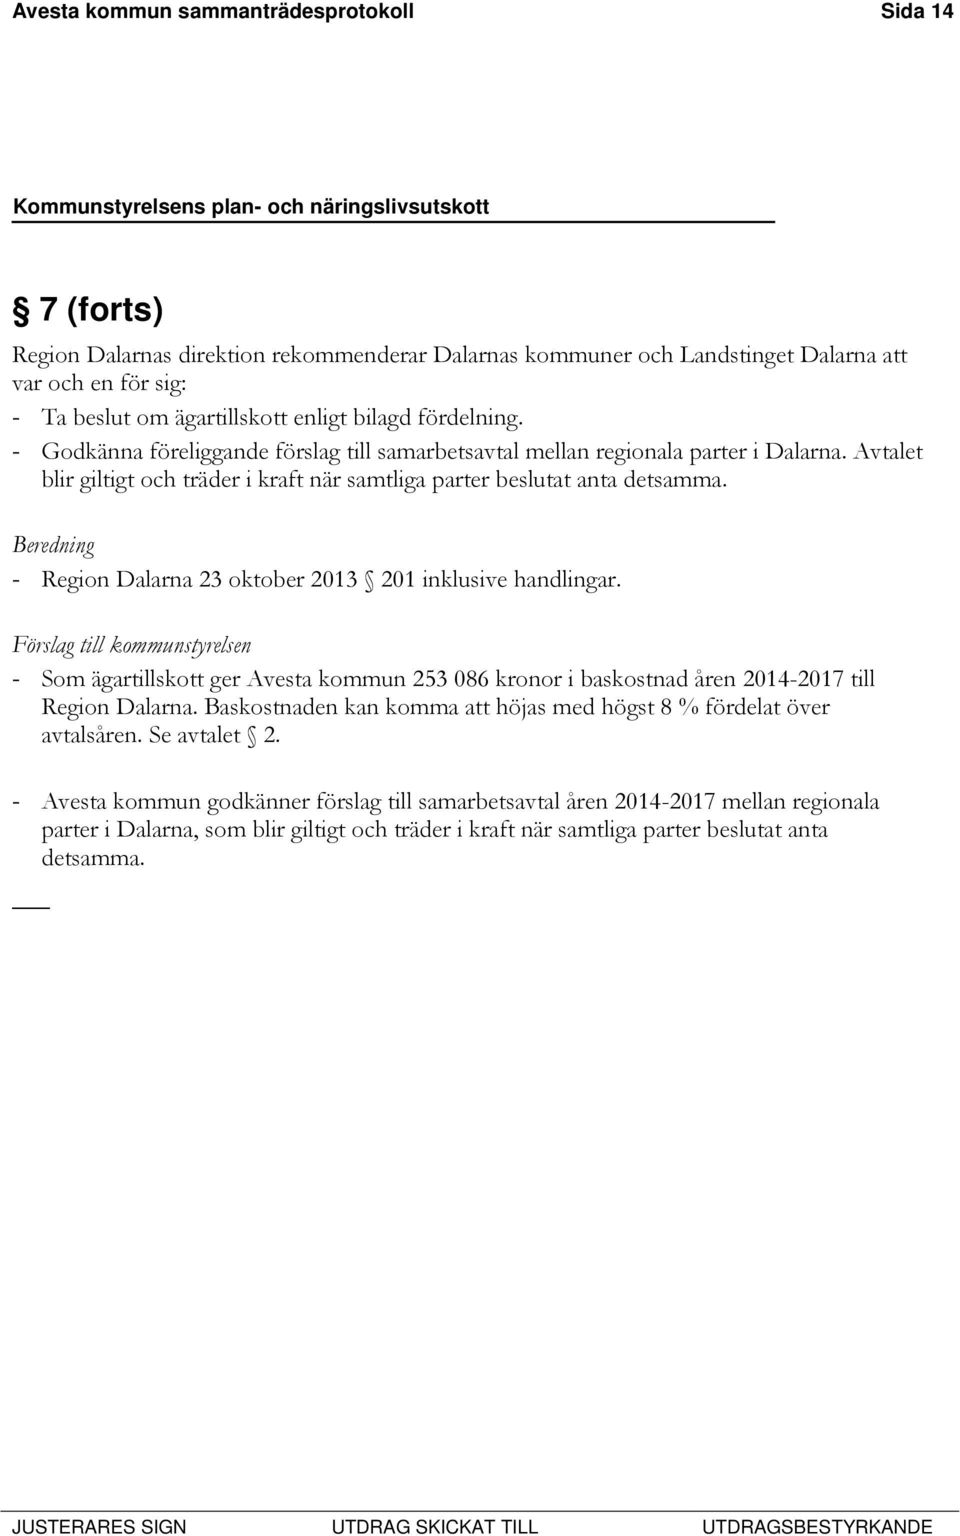 Beredning - Region Dalarna 23 oktober 2013 201 inklusive handlingar. Förslag till kommunstyrelsen - Som ägartillskott ger Avesta kommun 253 086 kronor i baskostnad åren 2014-2017 till Region Dalarna.